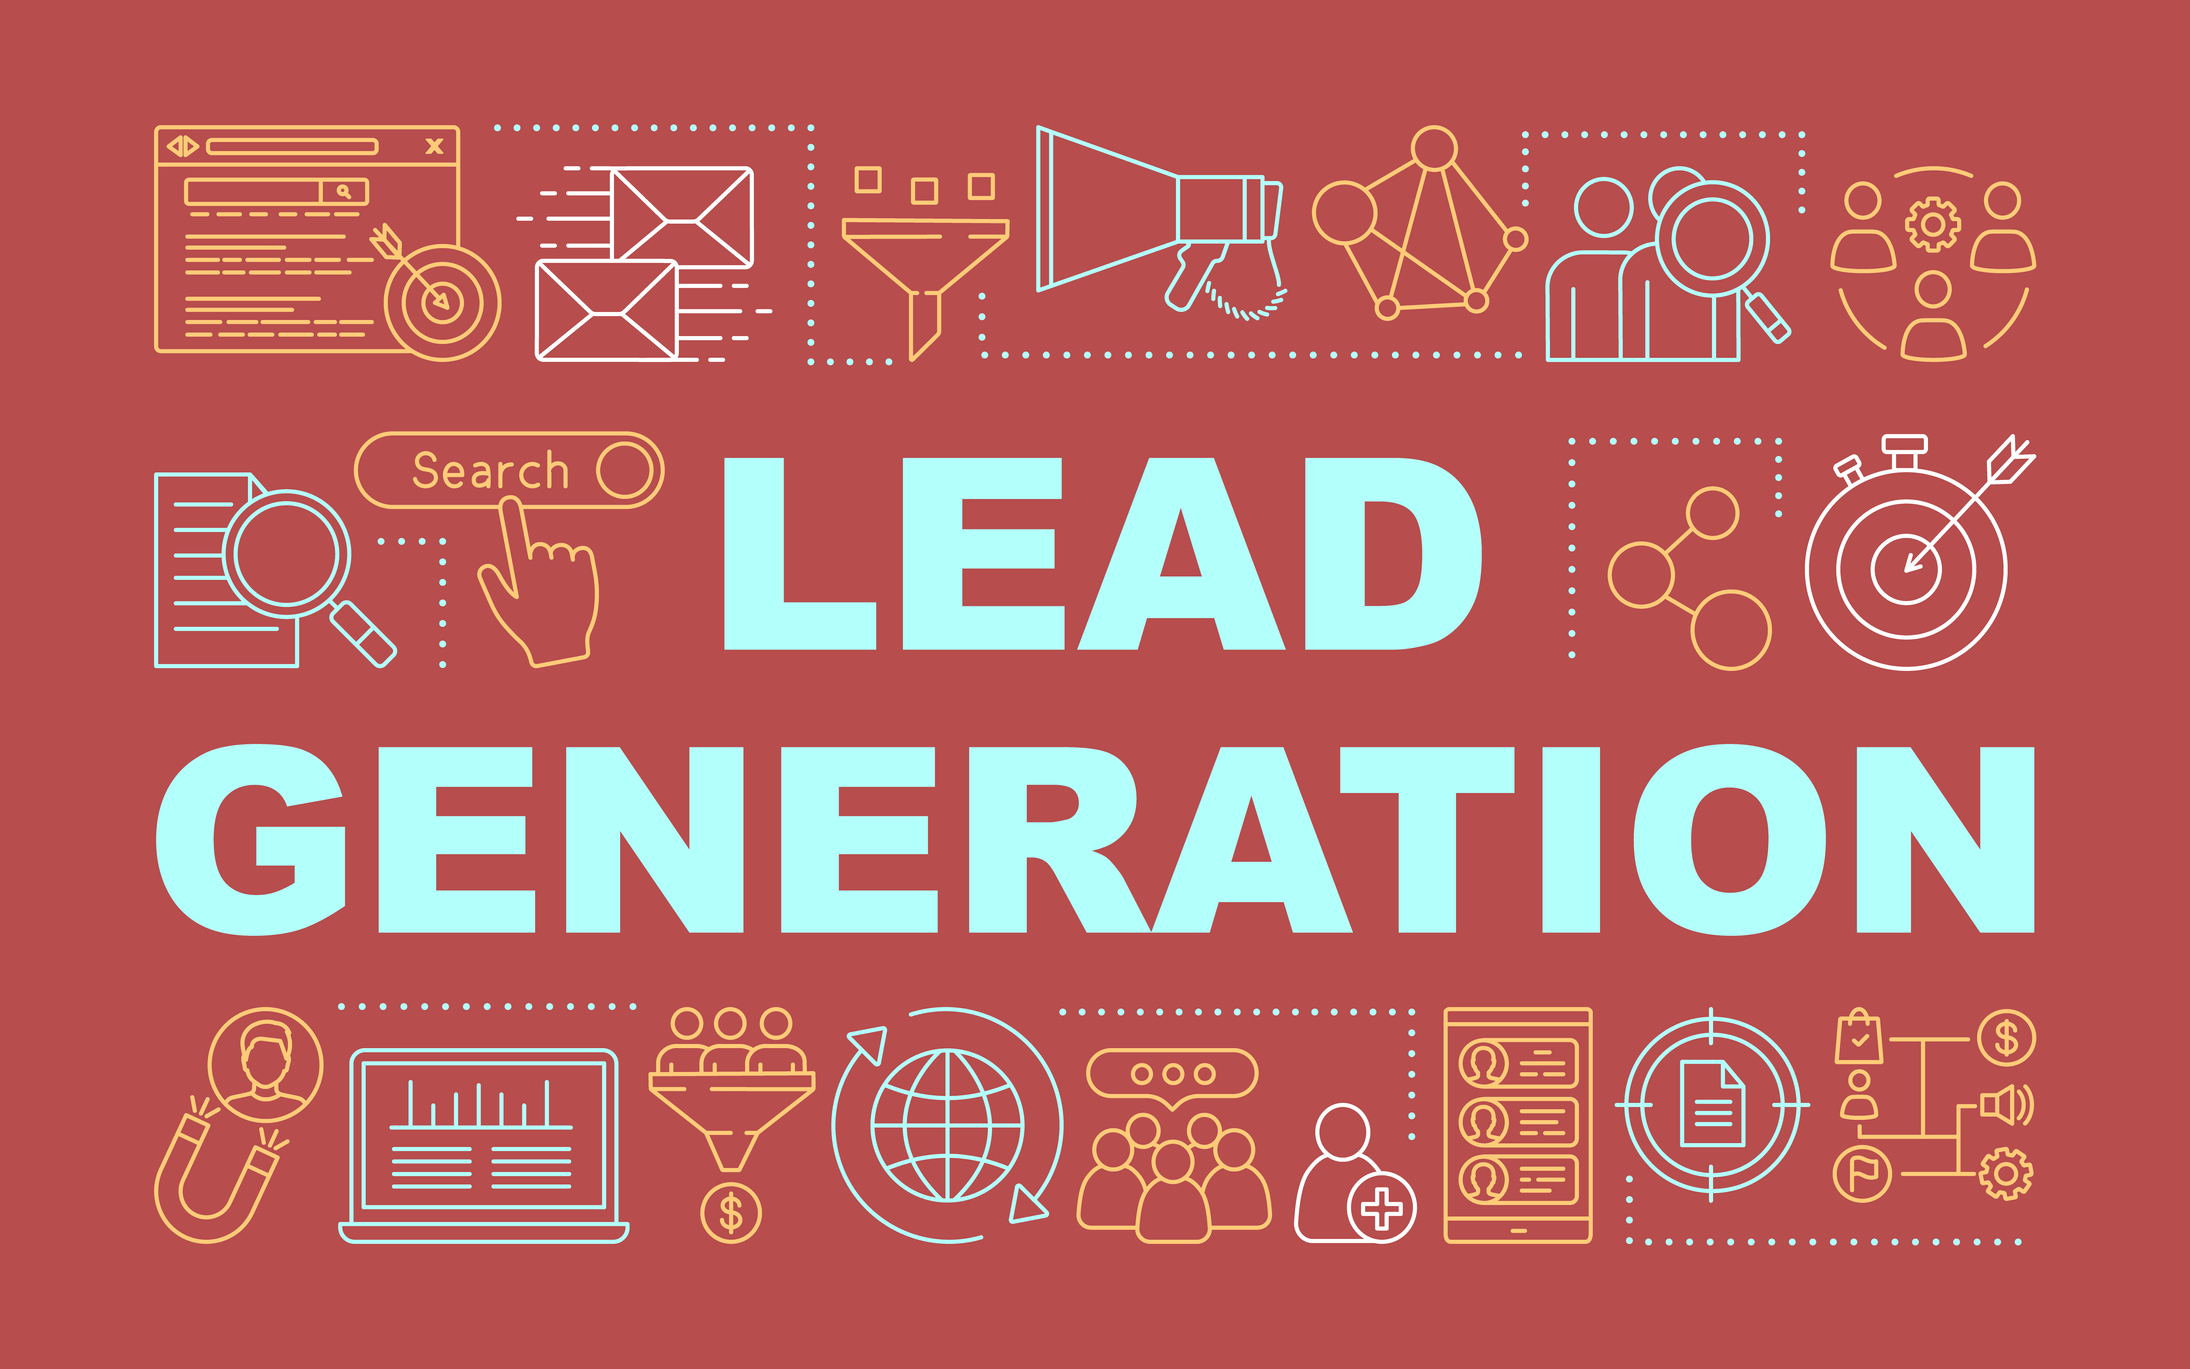 Lead Generation during economic hardships